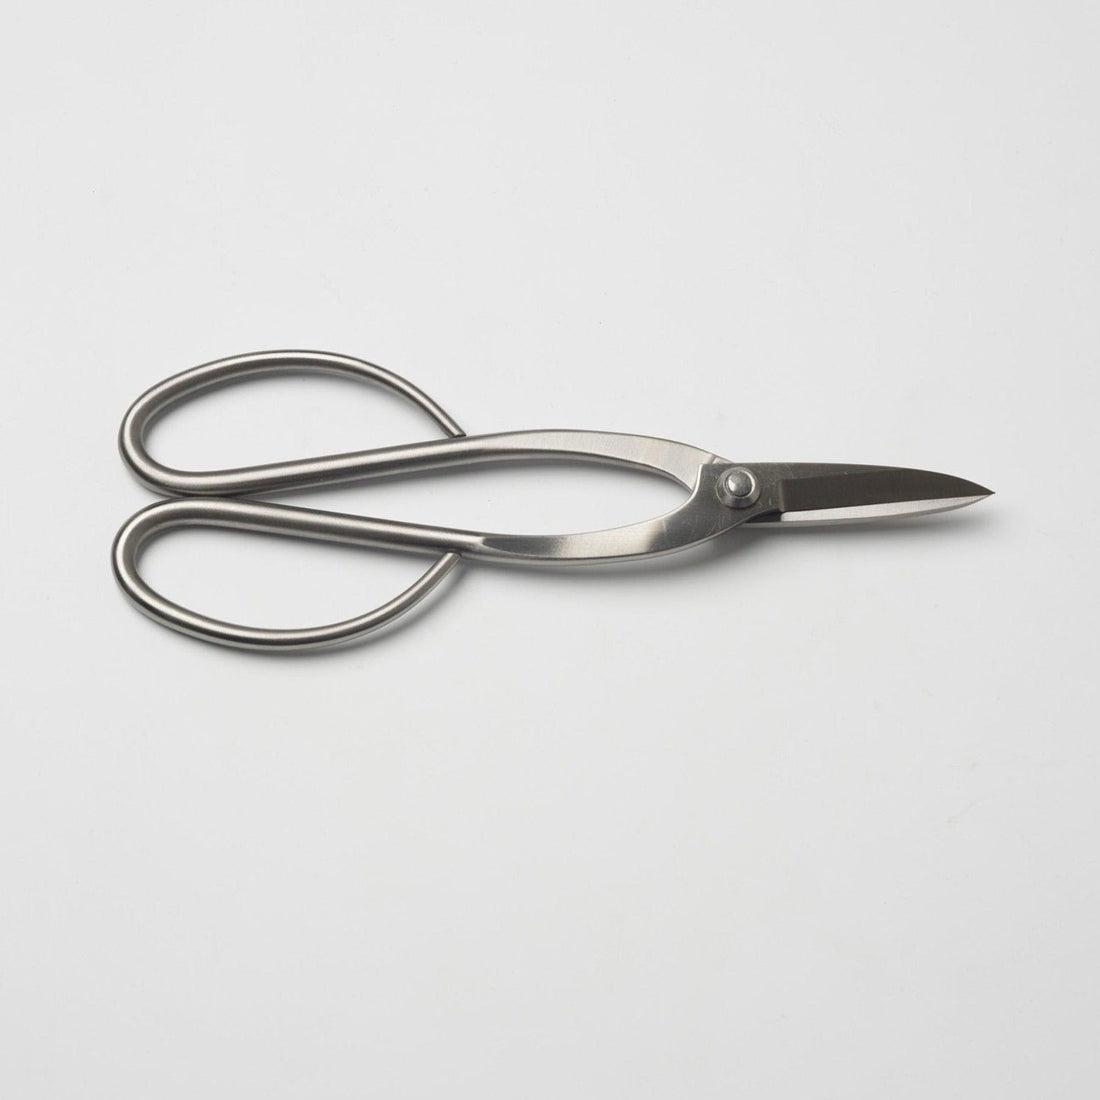 Ryuga scissors stainless steel 200 mm - The Bonsaïst